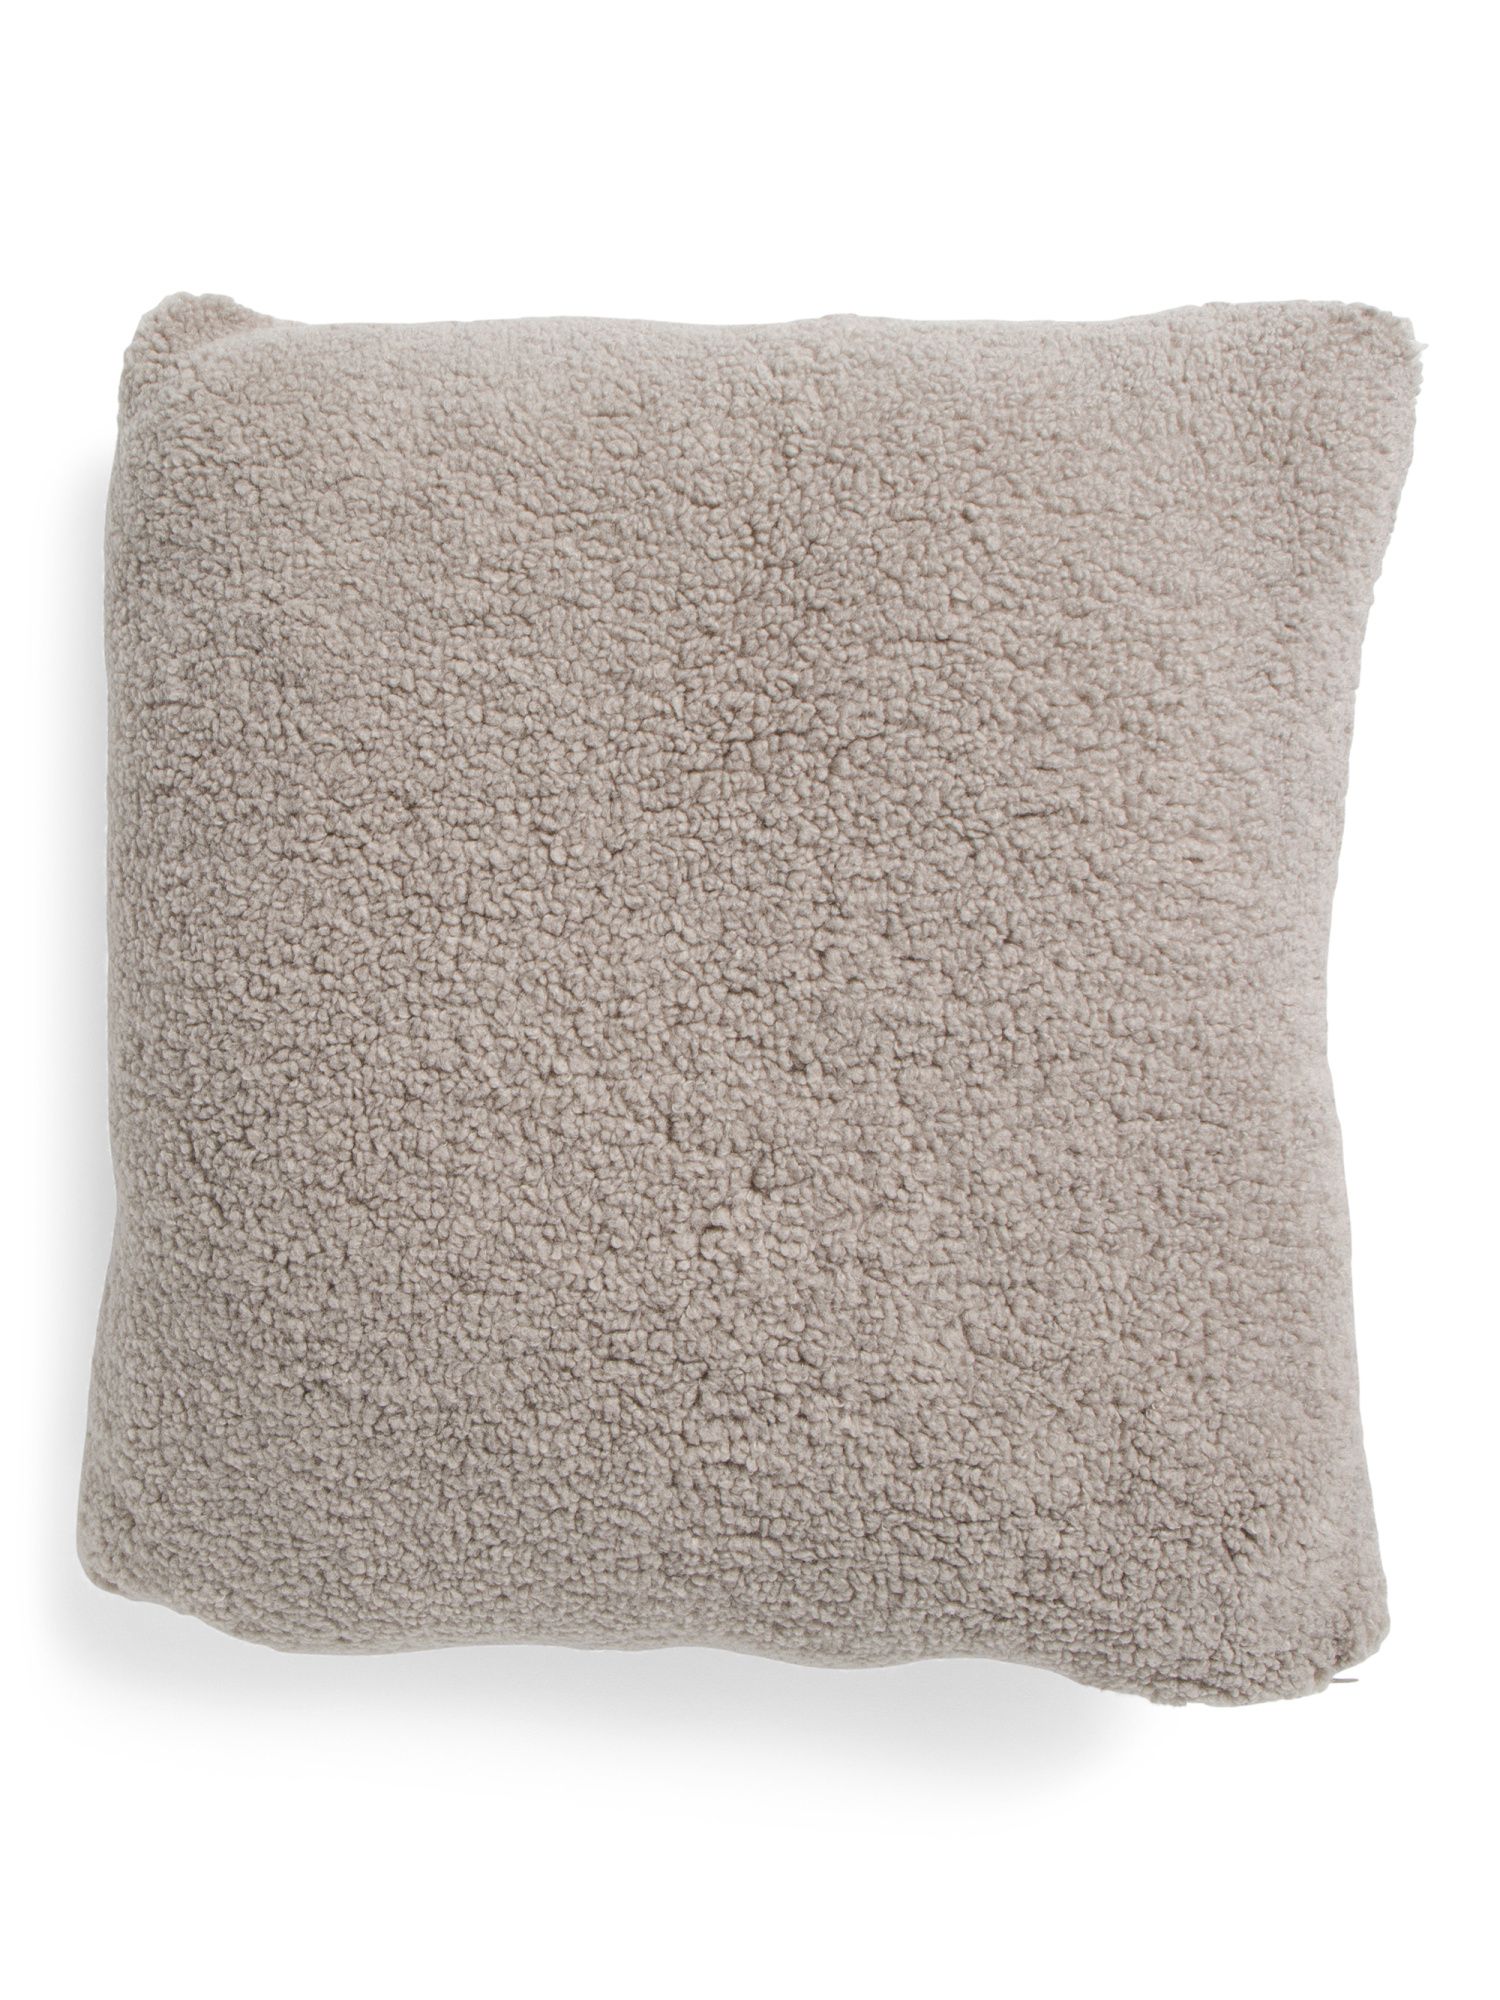 20x20 Lux Teddy Textured Pillow | TJ Maxx